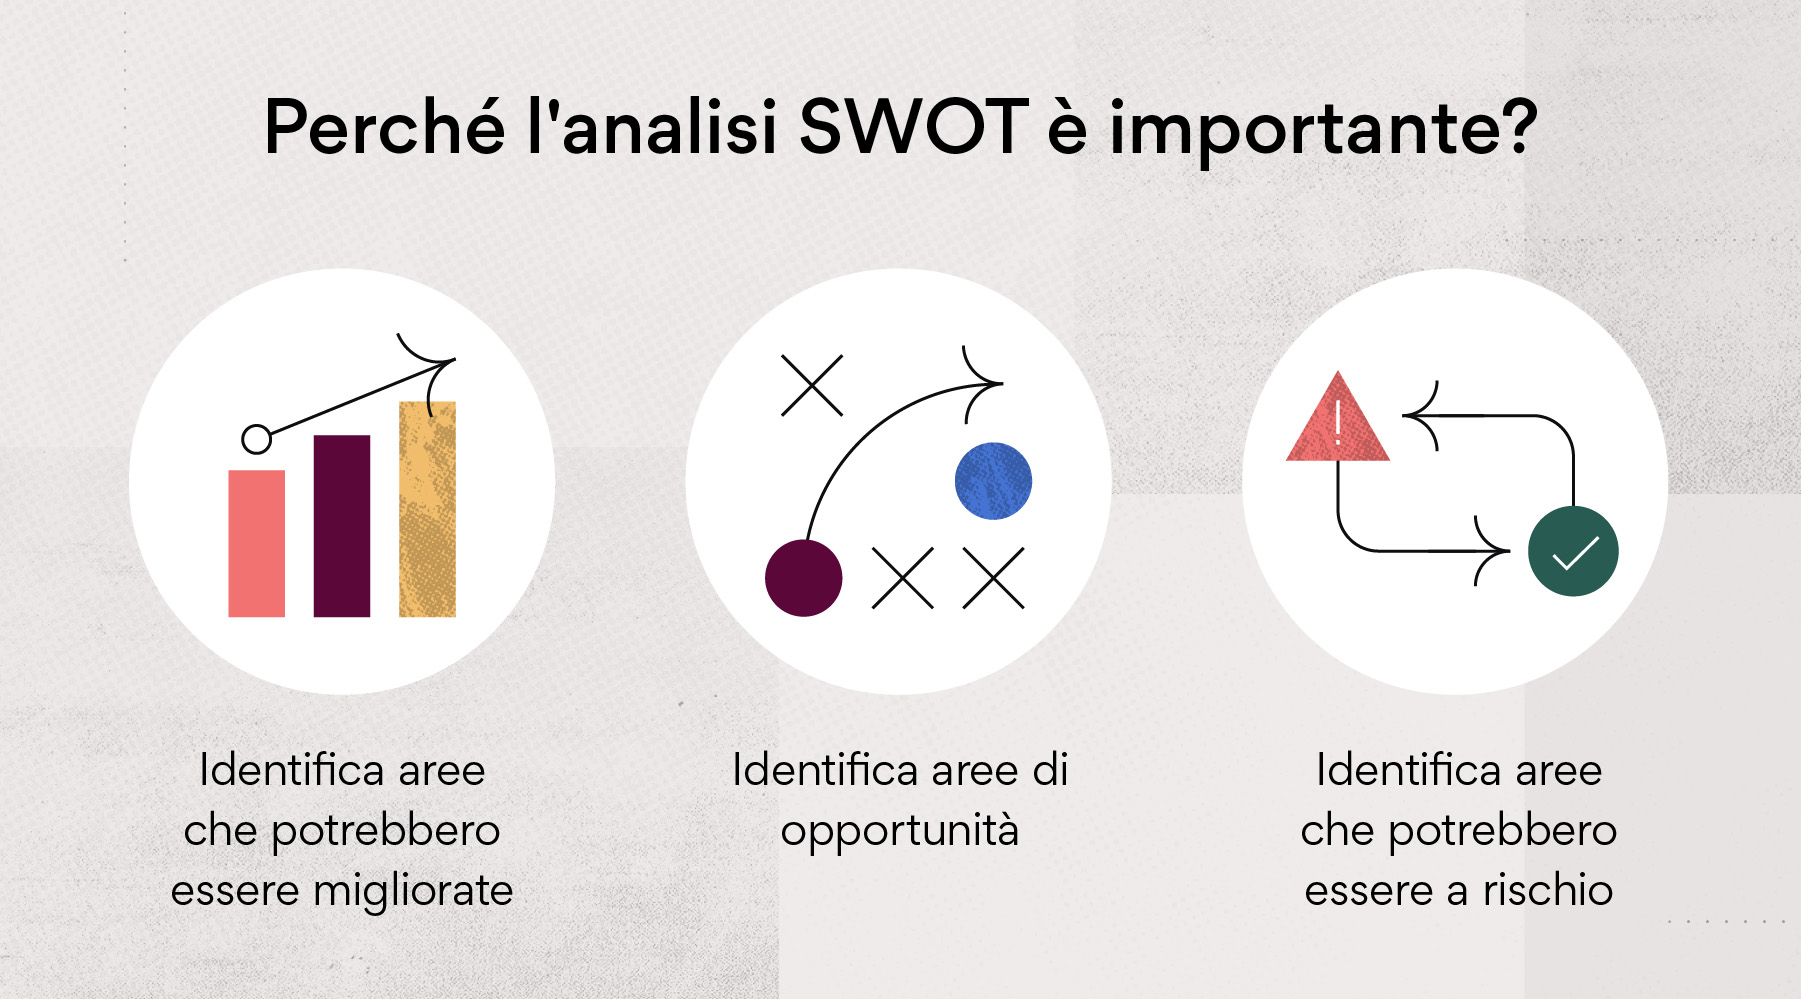 Perché un'analisi SWOT è importante?